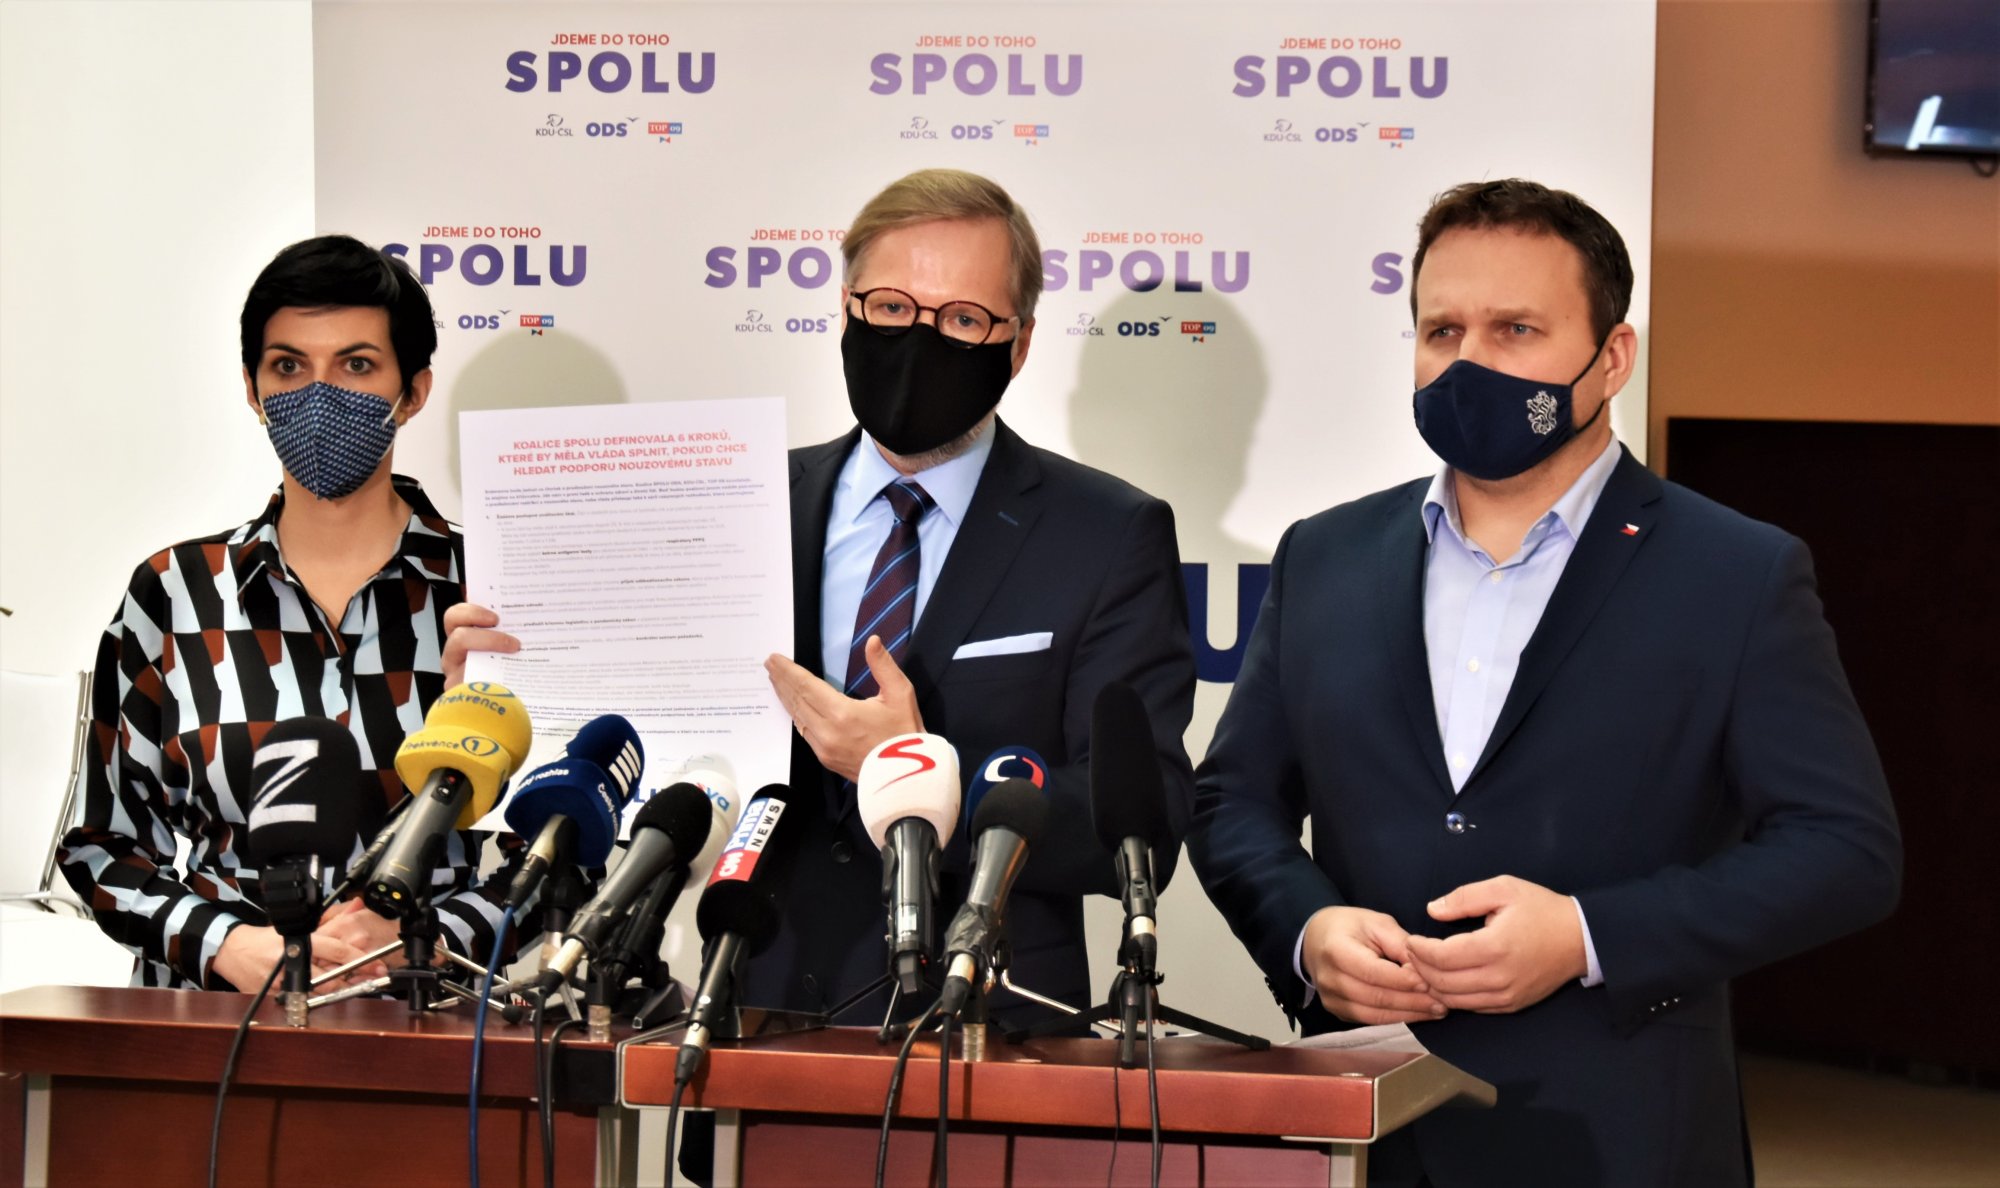 Koalice SPOLU: Vyzýváme vládu k jednání o odškodňovacím zákonu